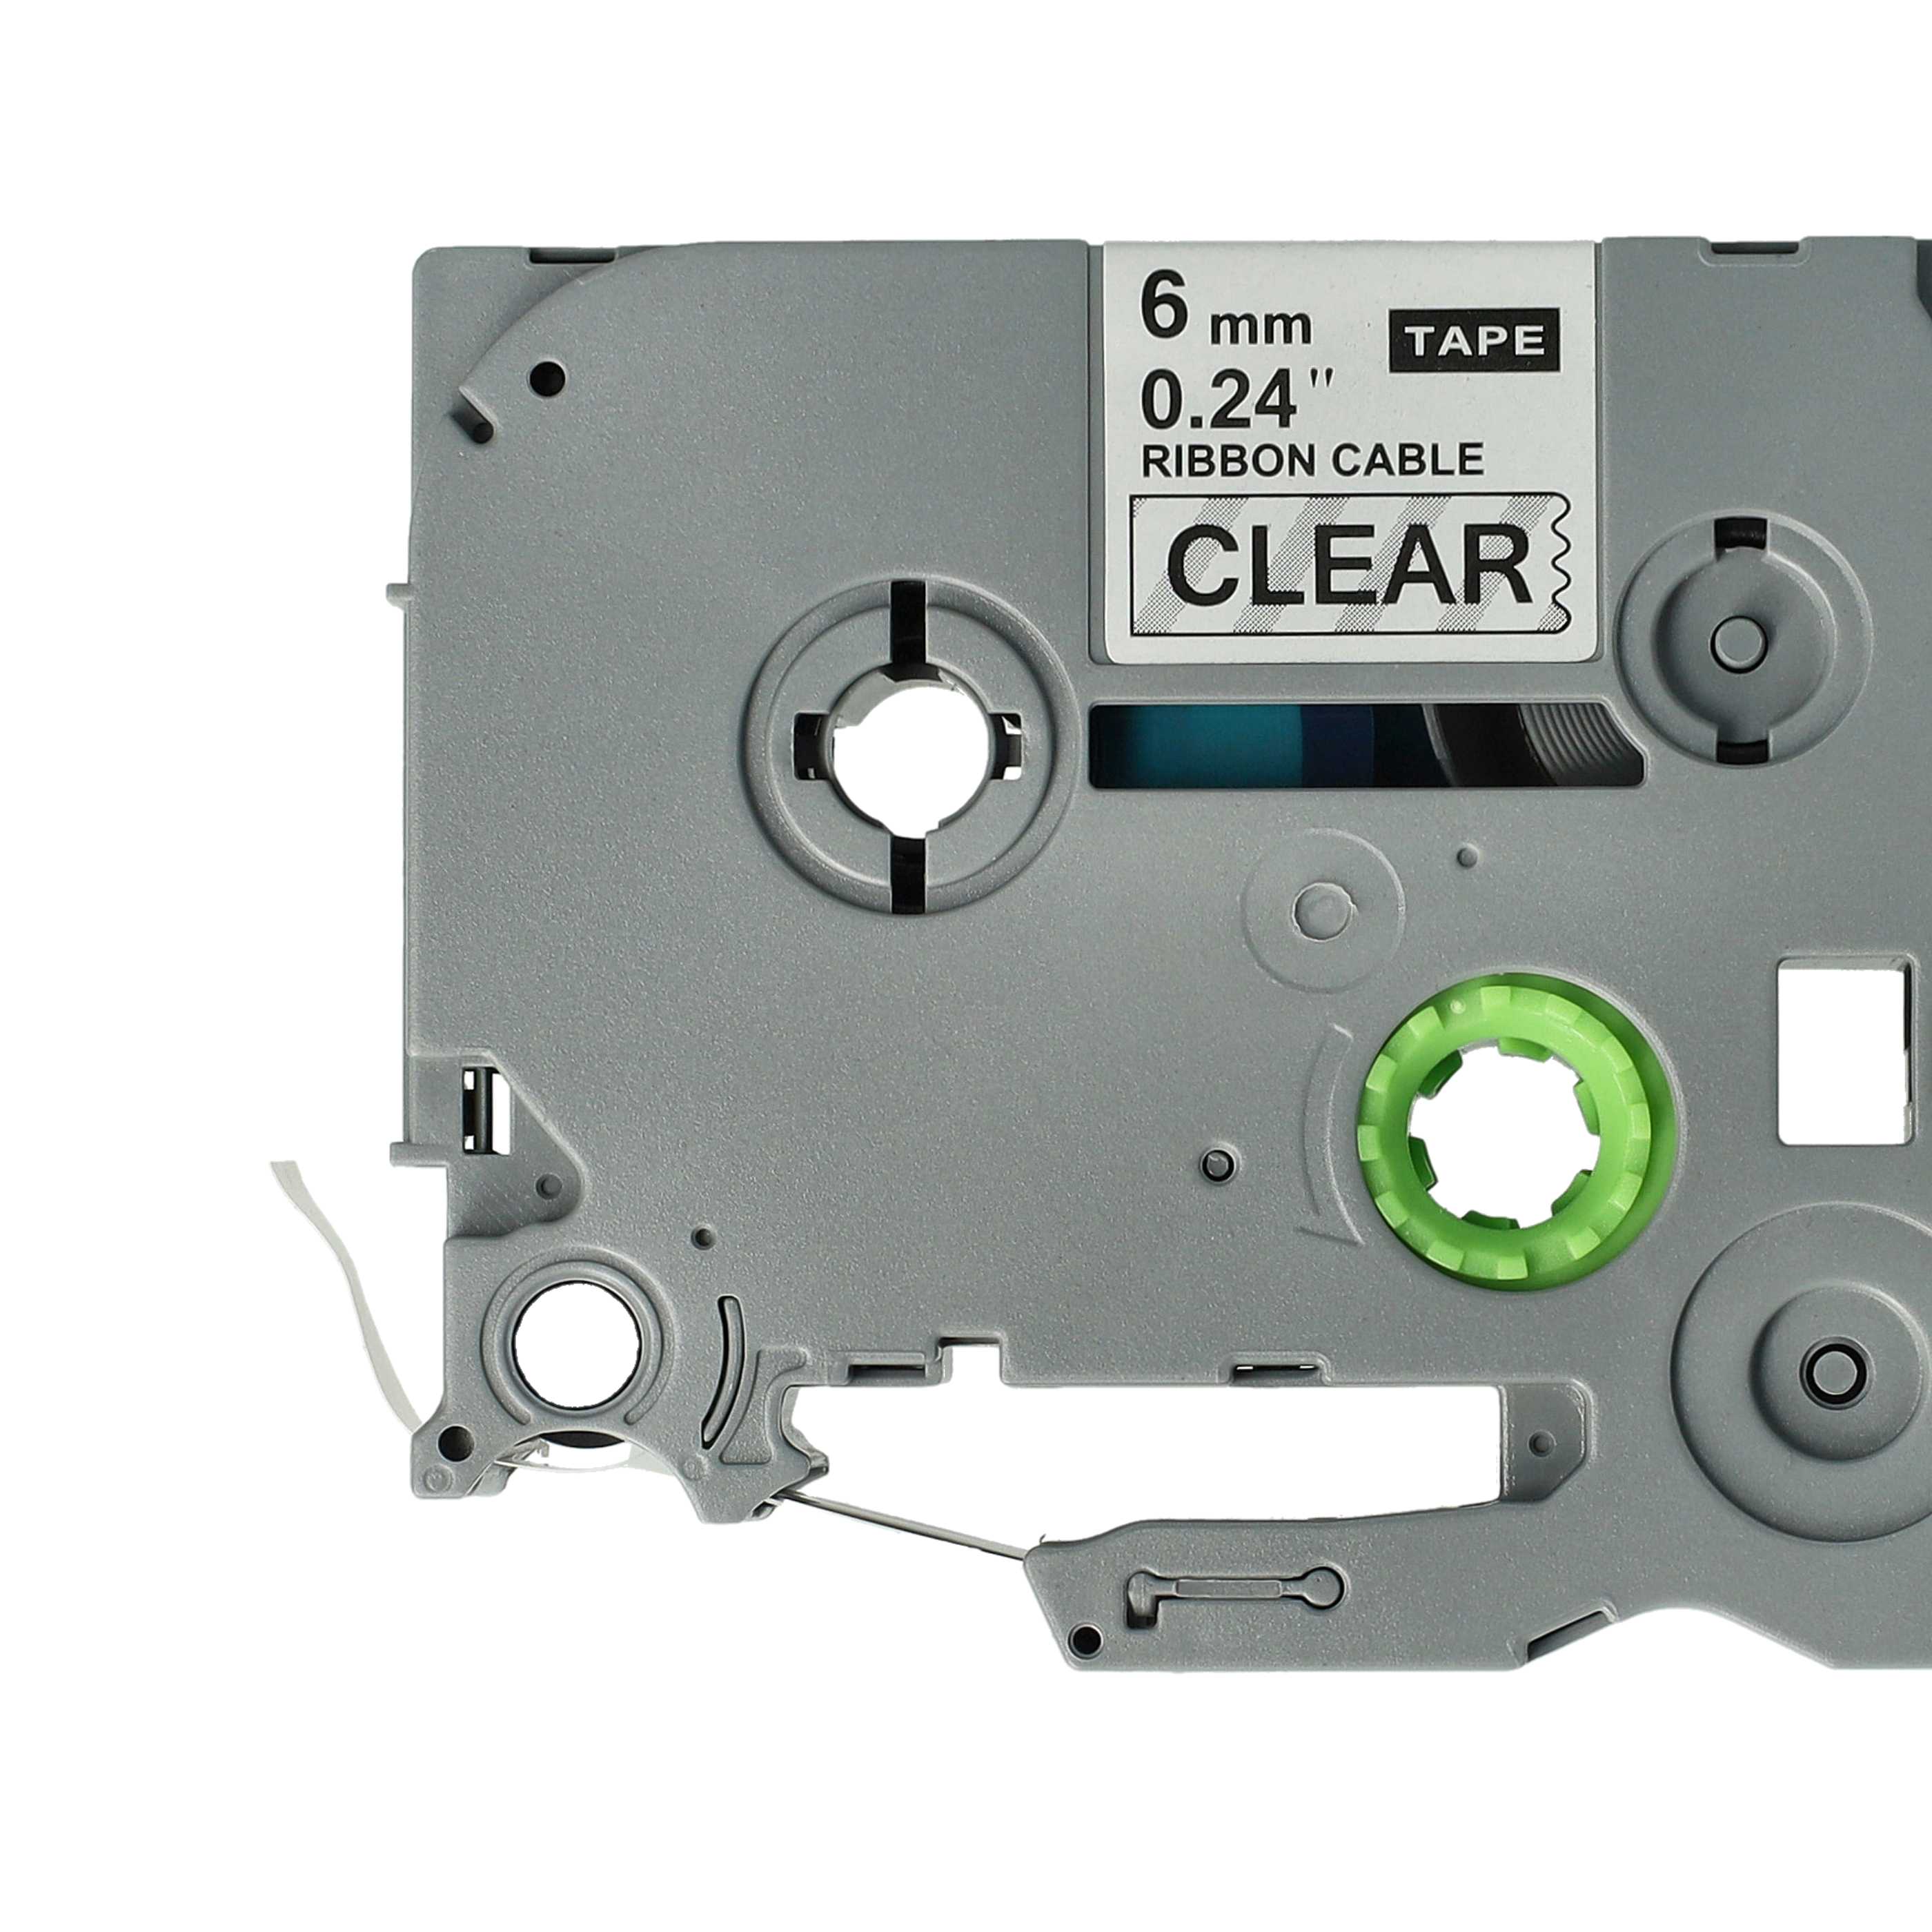 Cassetta nastro sostituisce Brother TZeFX111 per etichettatrice Brother 6mm nero su trasparente, flessibile